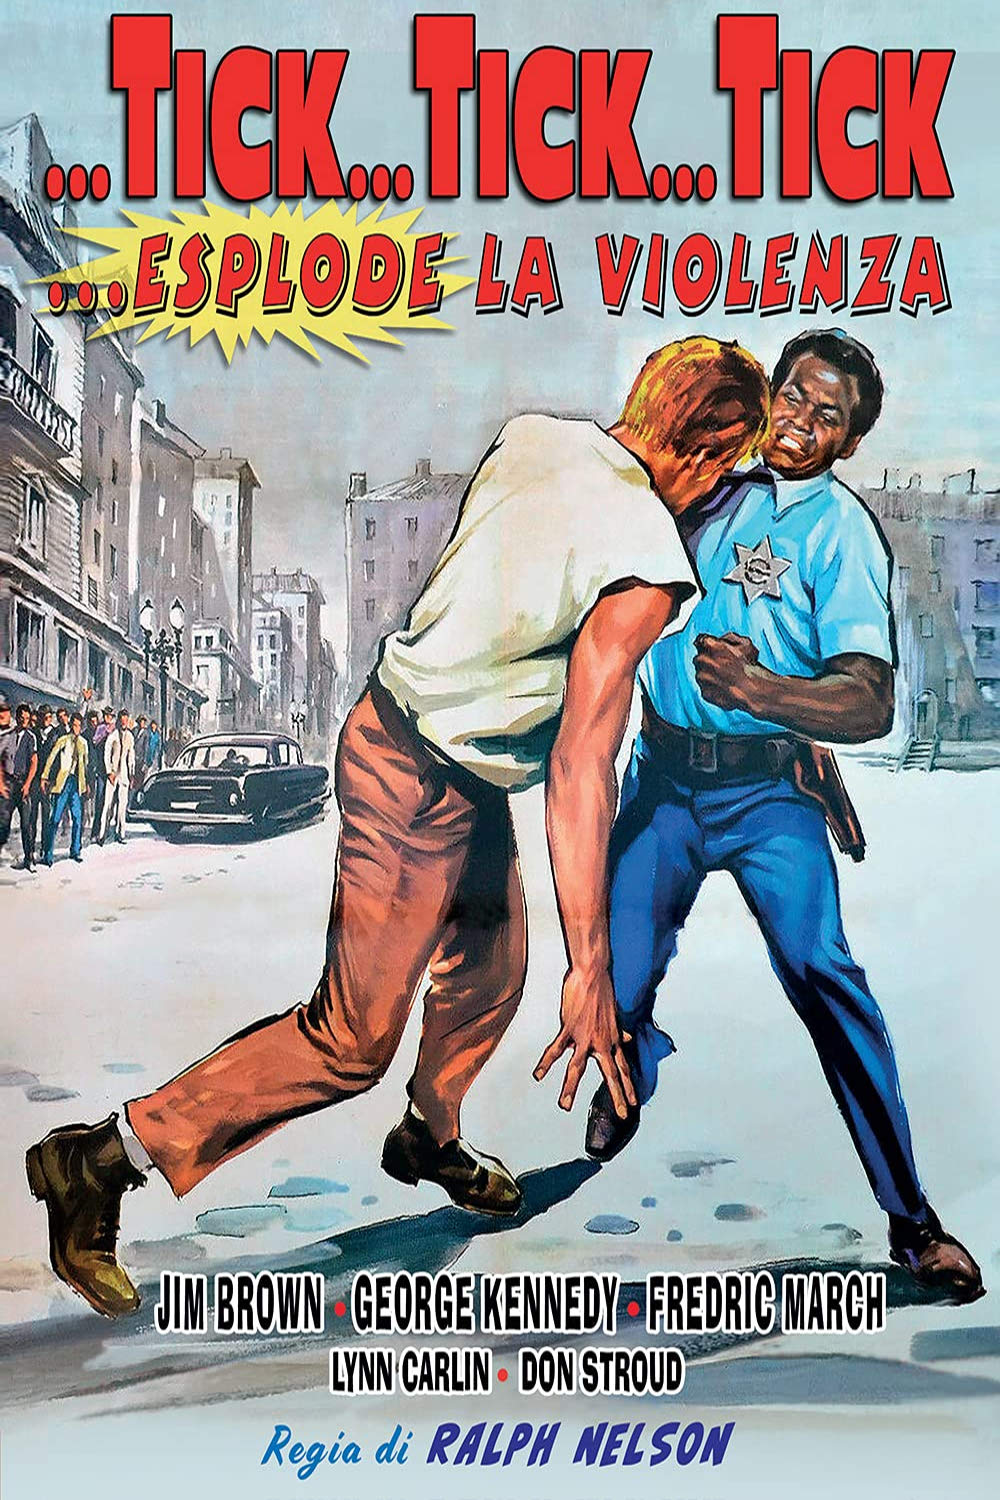 Tick… tick… tick… esplode la violenza (1970)